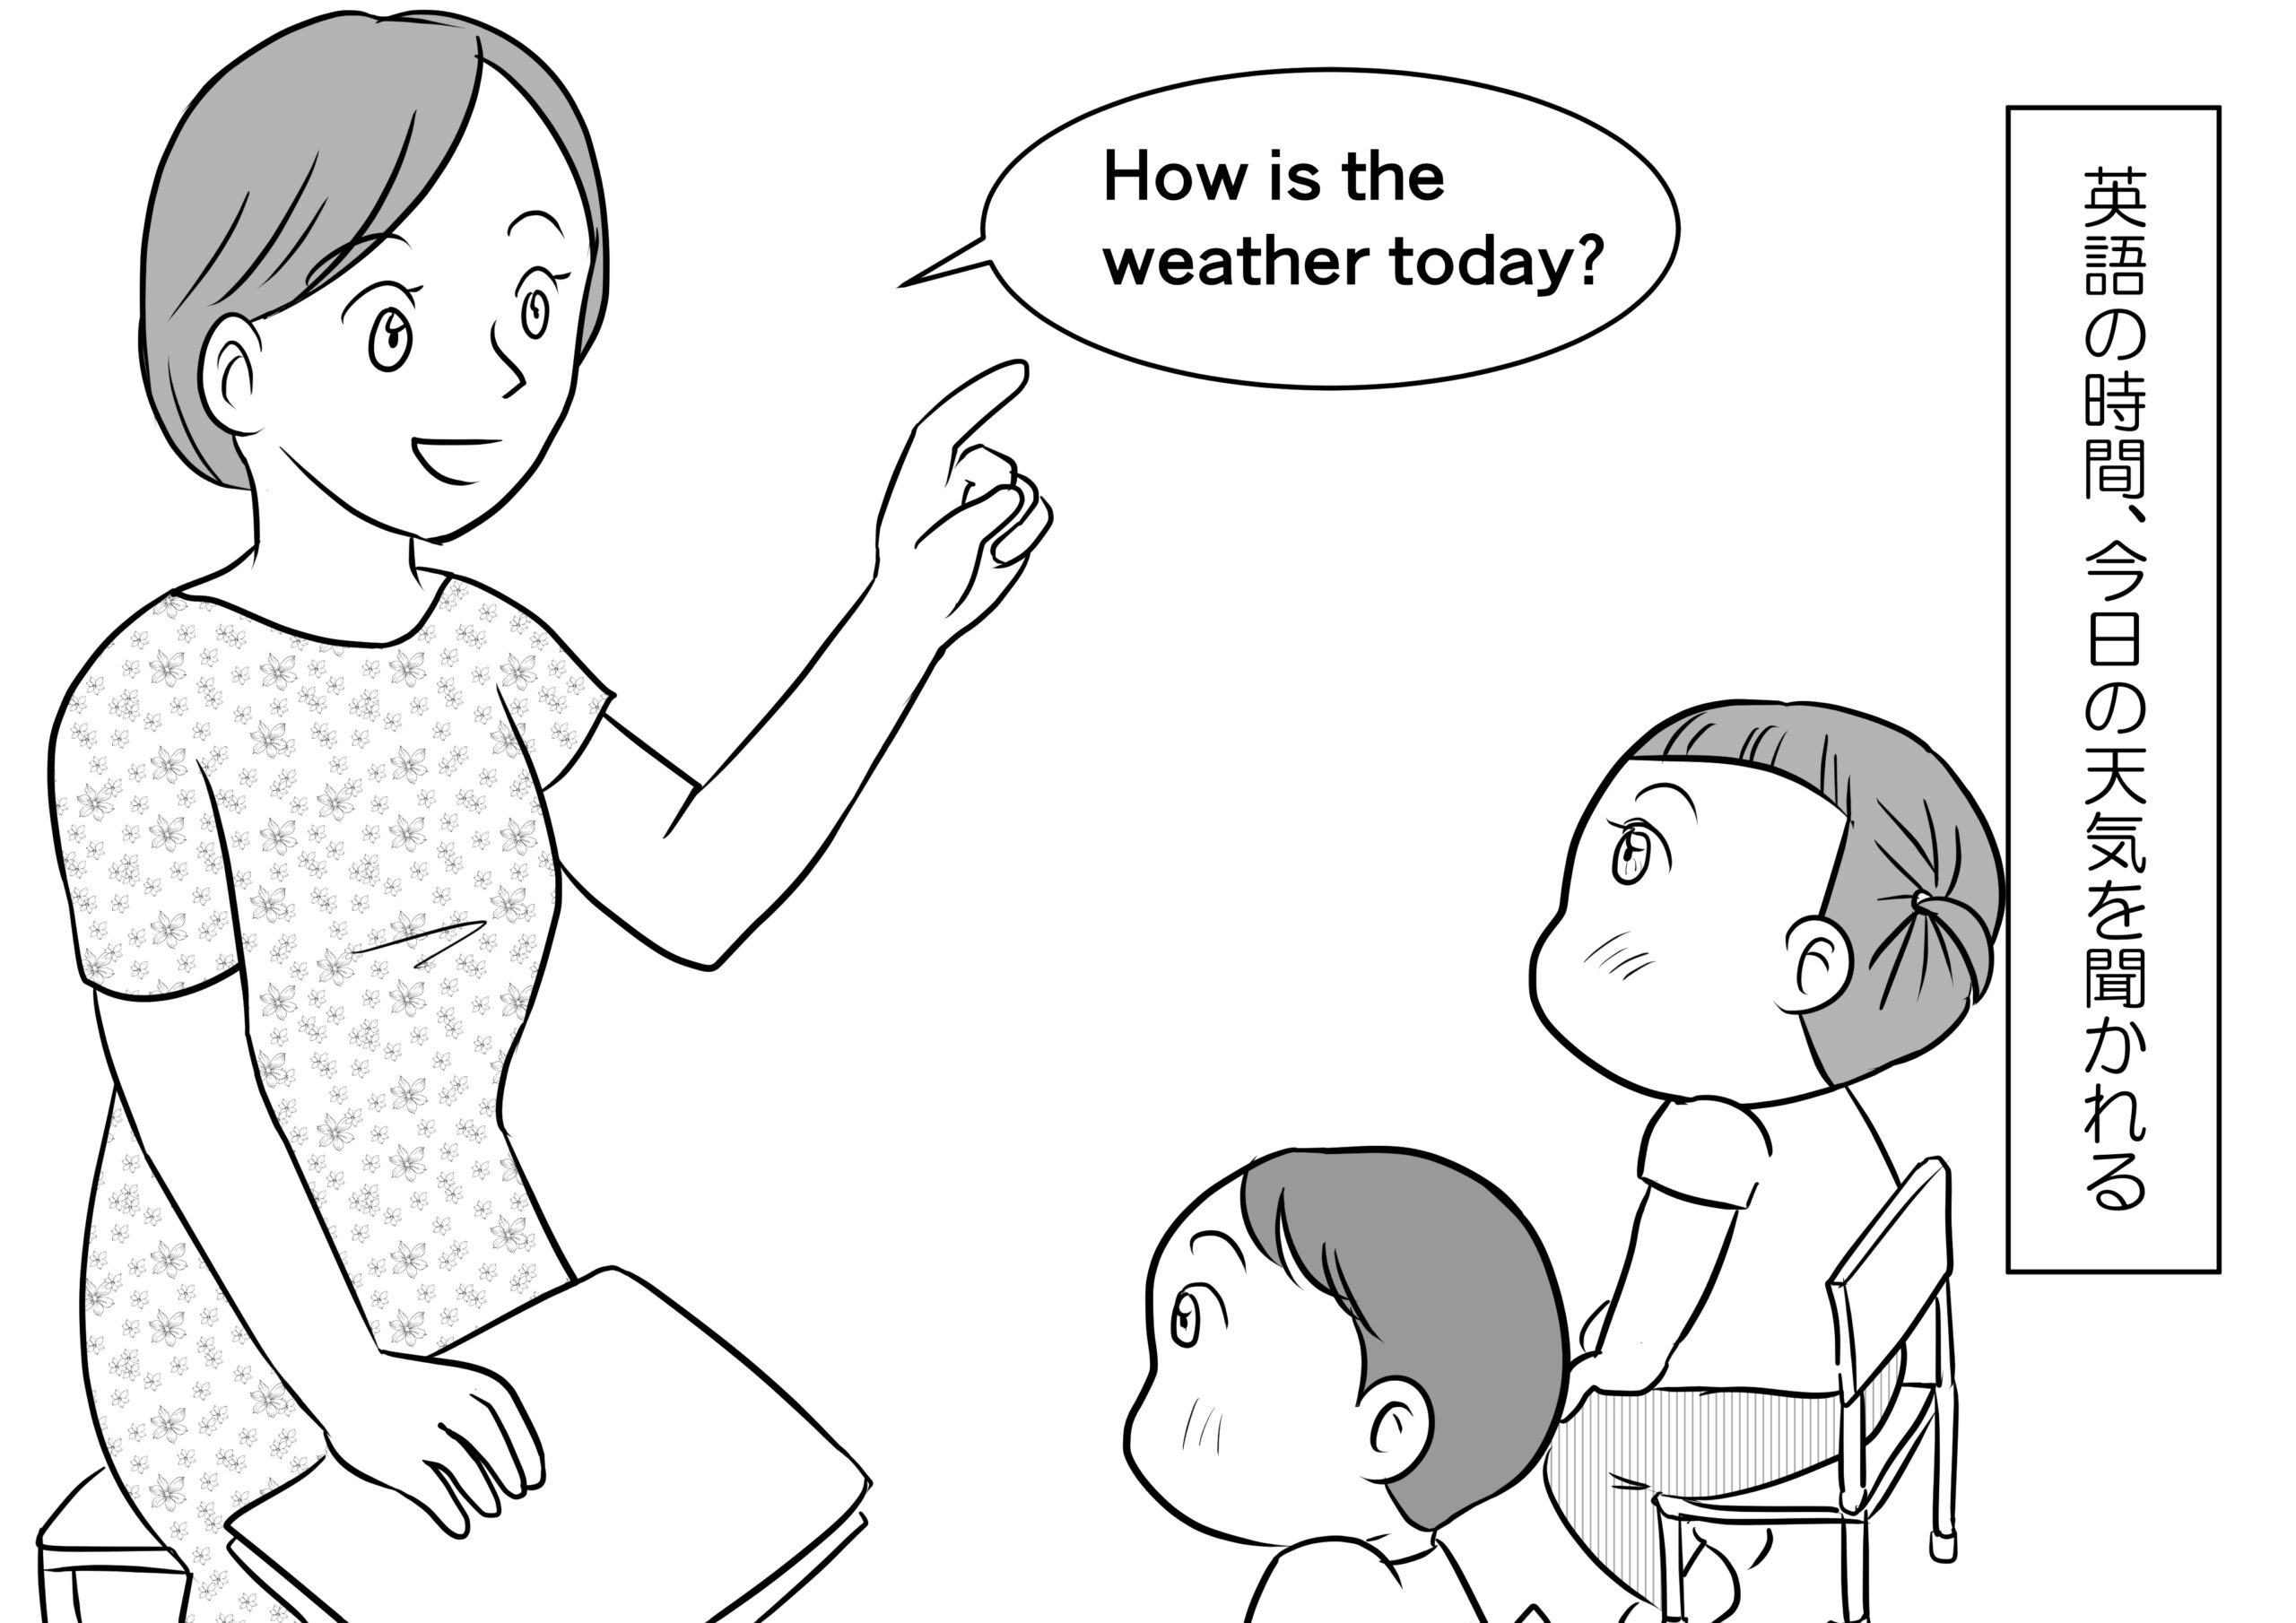 英語の時間、先生から今日の天気を聞かれる
How is the weather today?